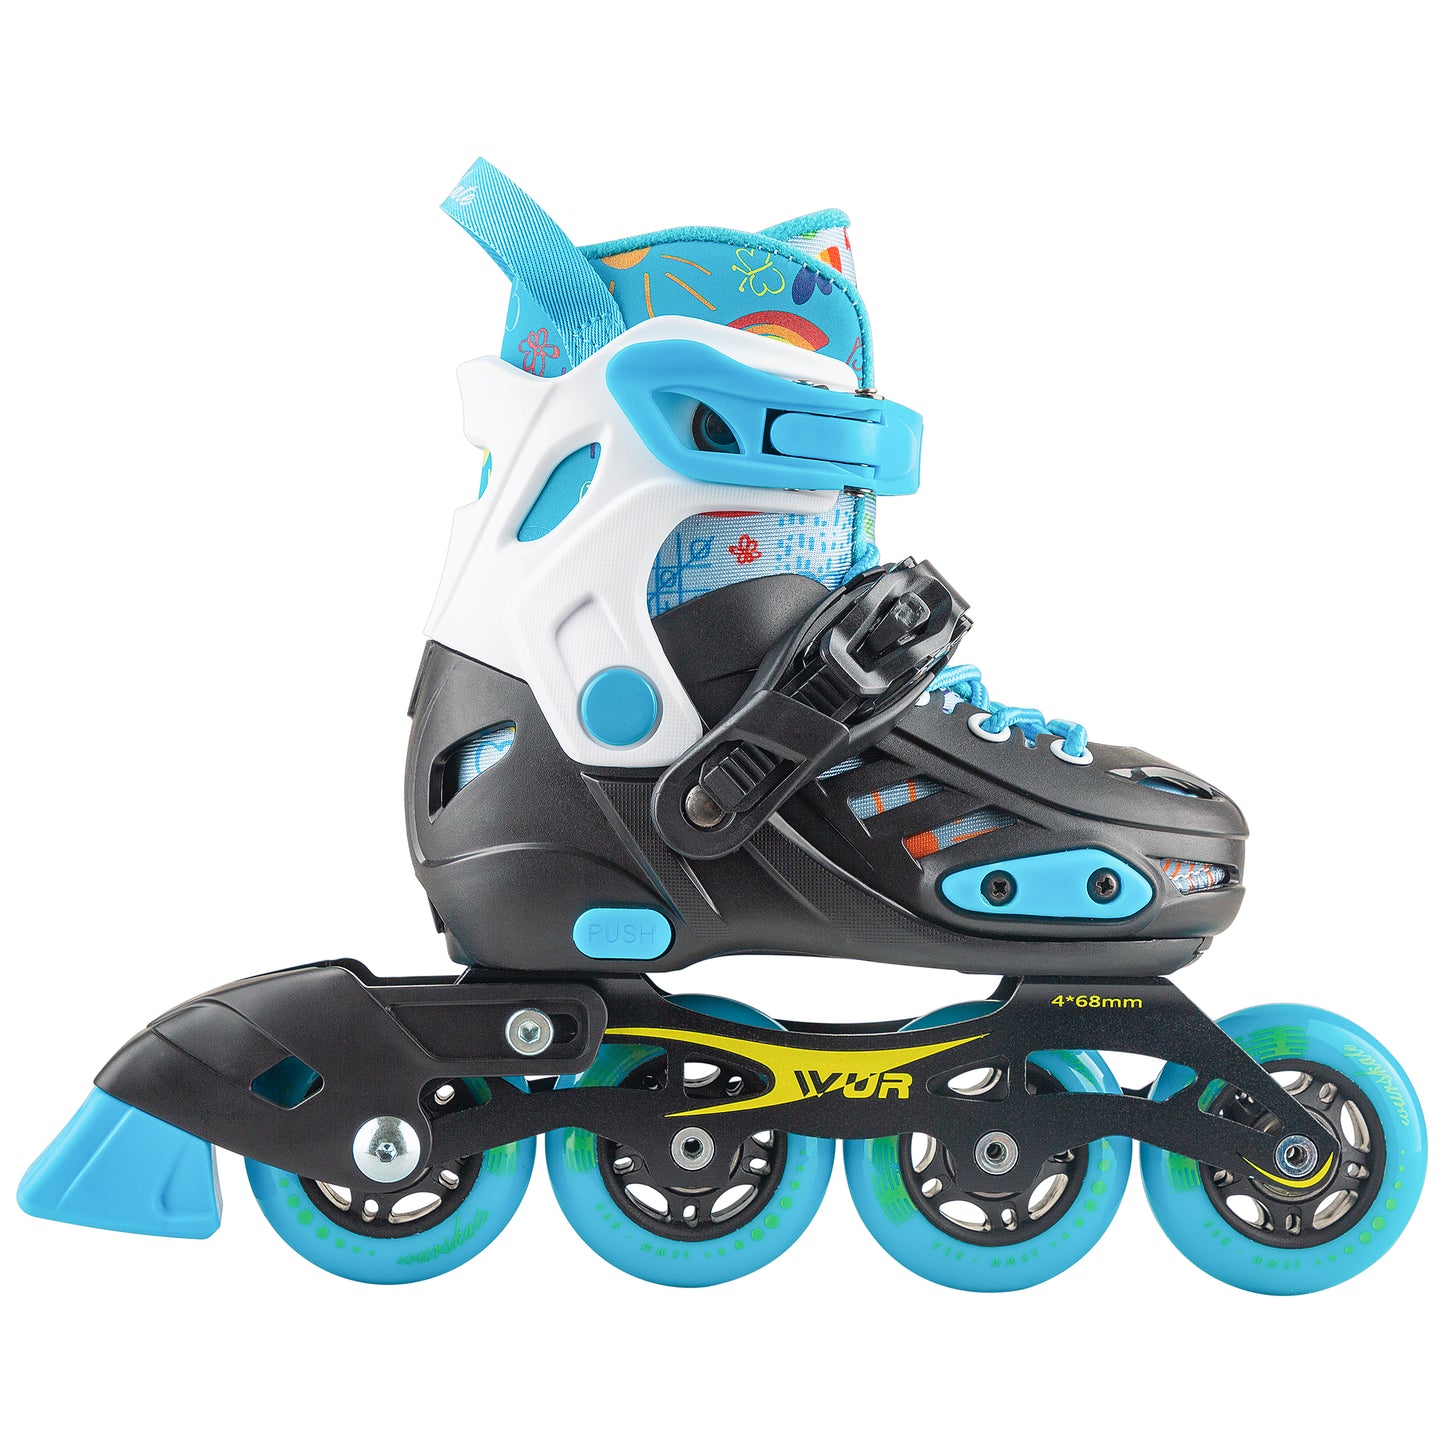 D101 Adjustable skate blue